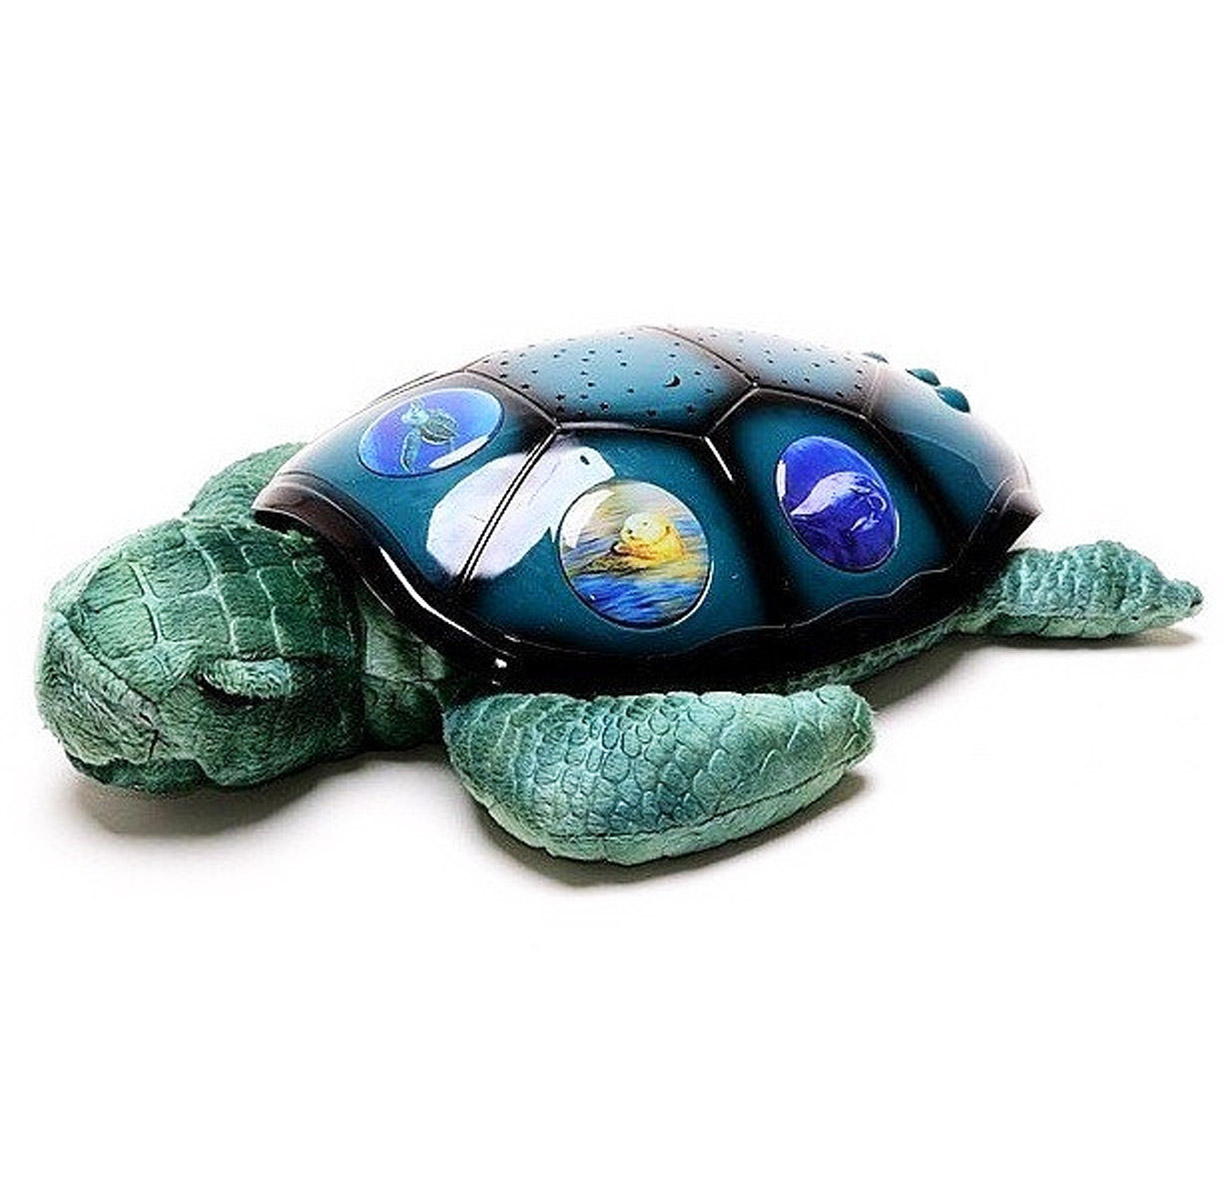 Нічник - проектор 'Спляча черепаха'